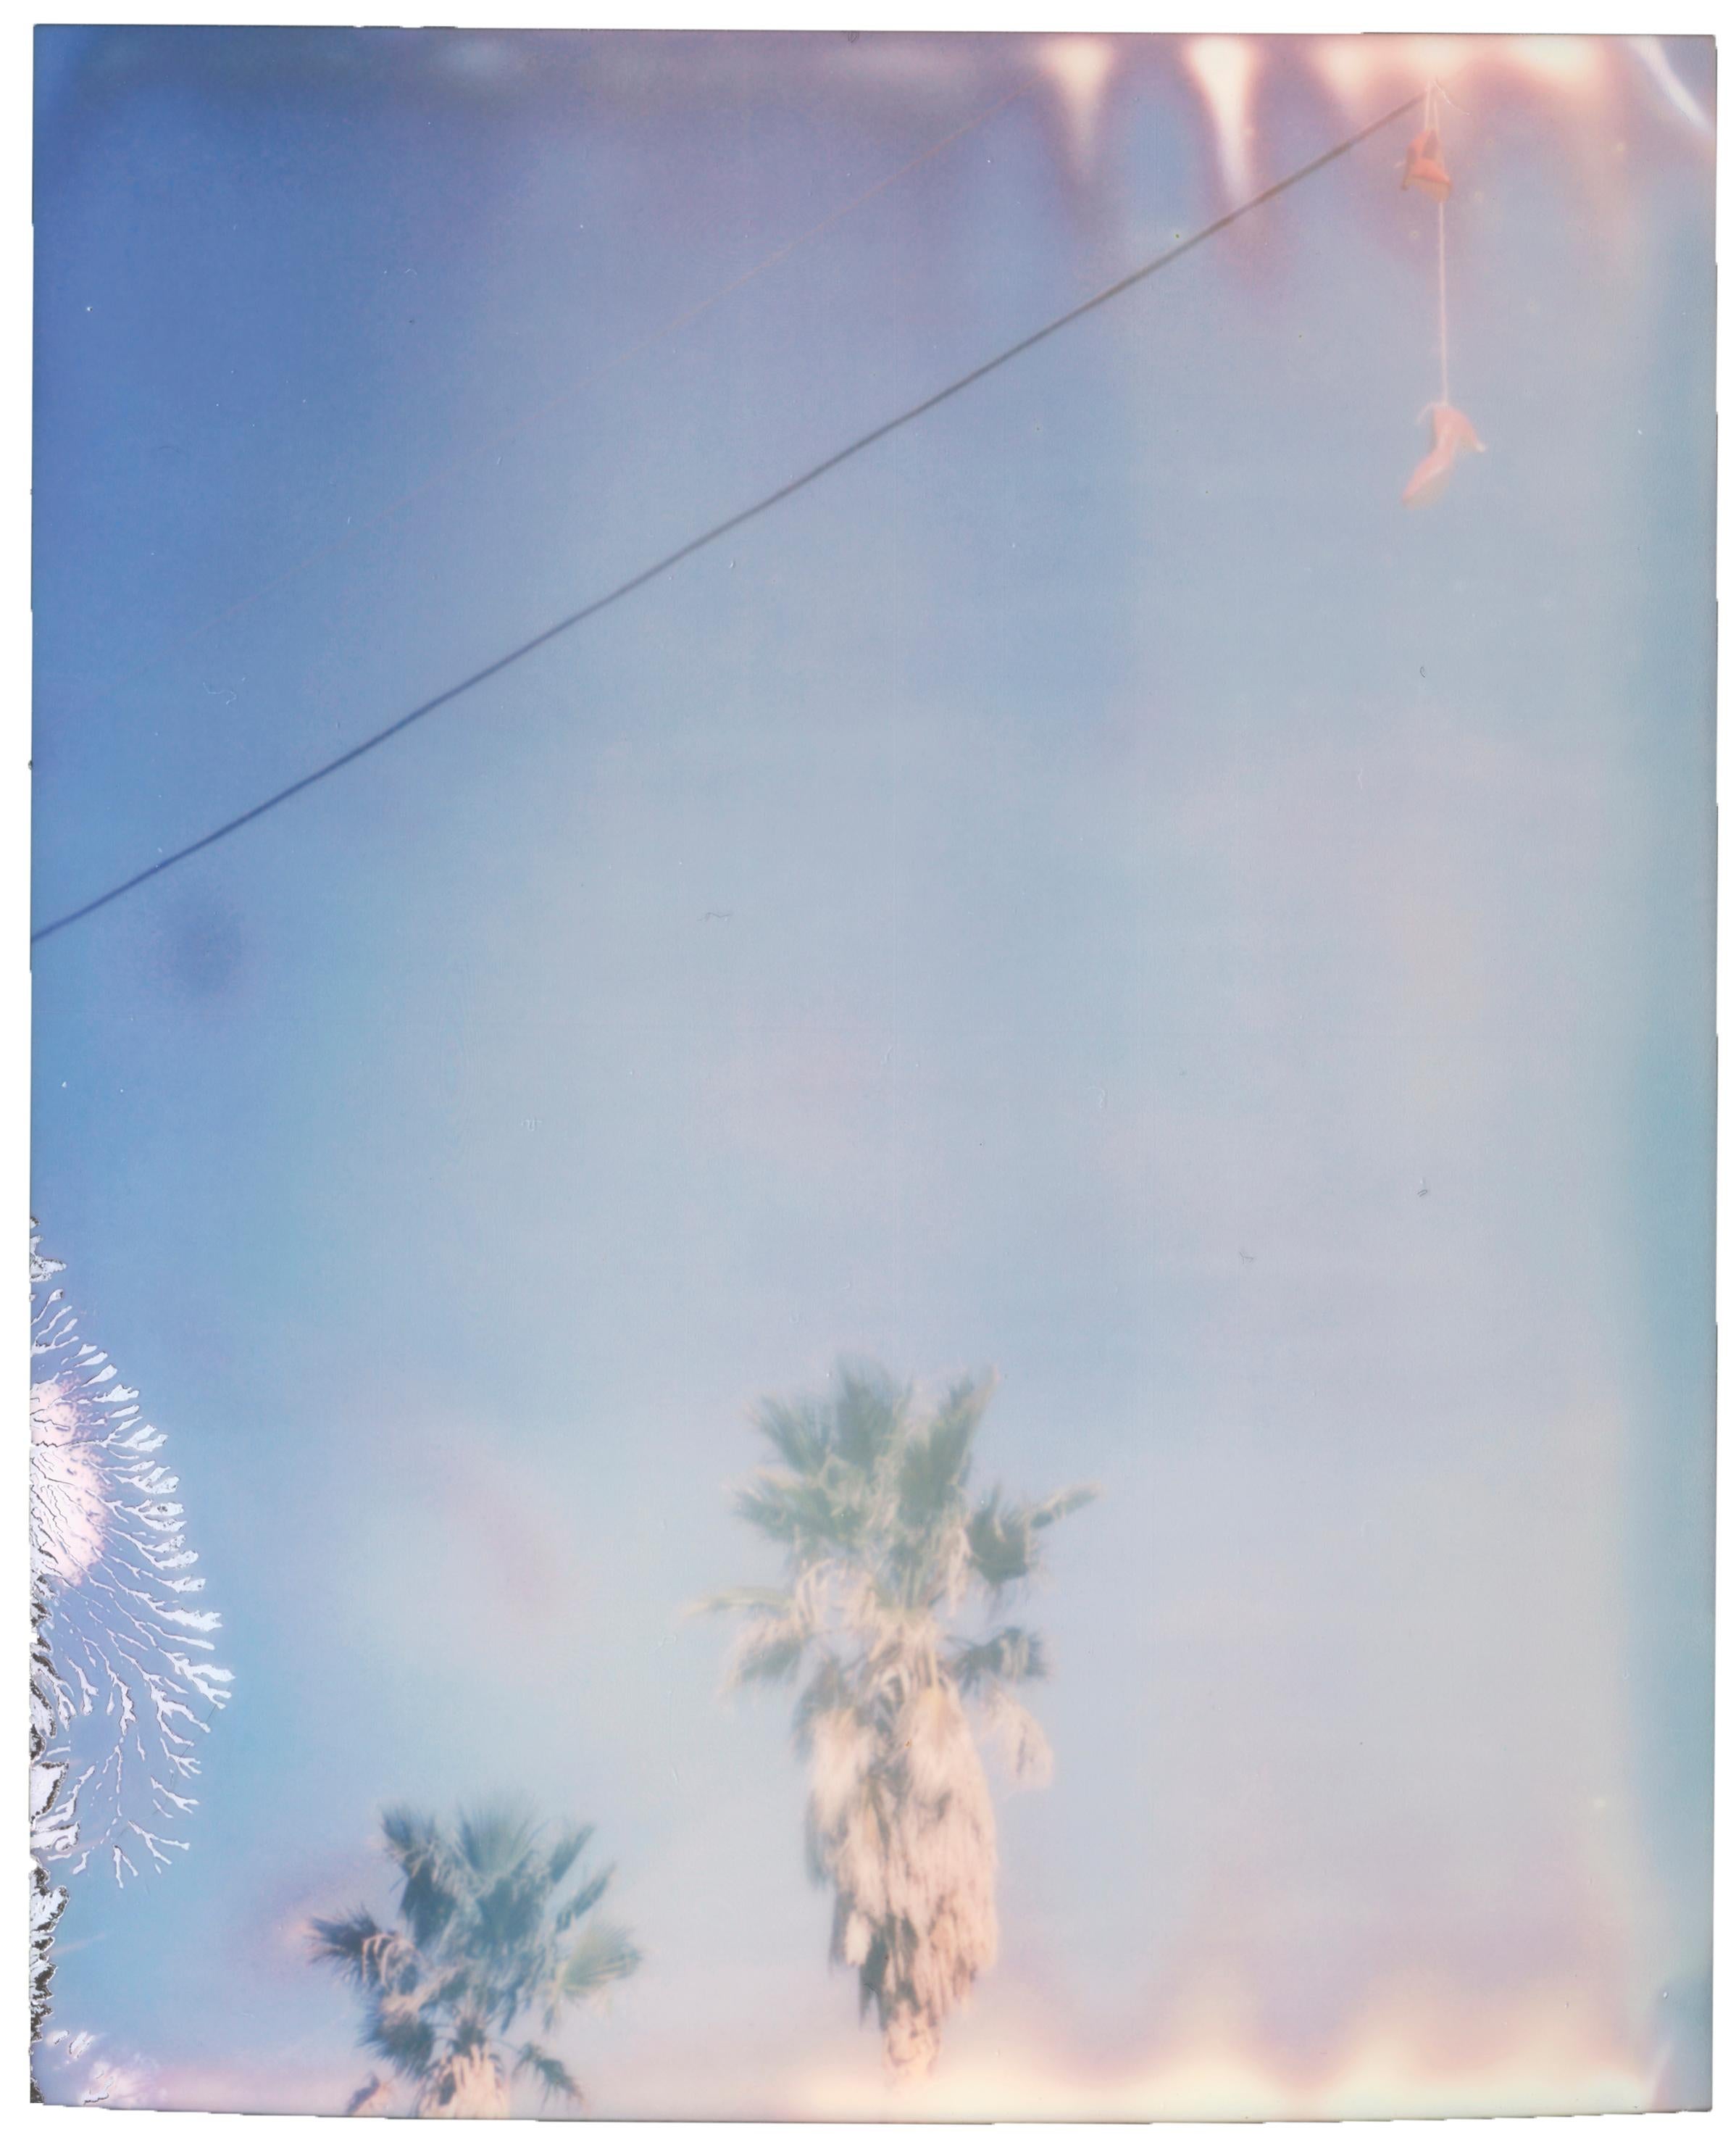 Landscape Photograph Stefanie Schneider - Red Shoes Dangling (29 Palms, CA) - 21e siècle, Polaroïd, Contemporain